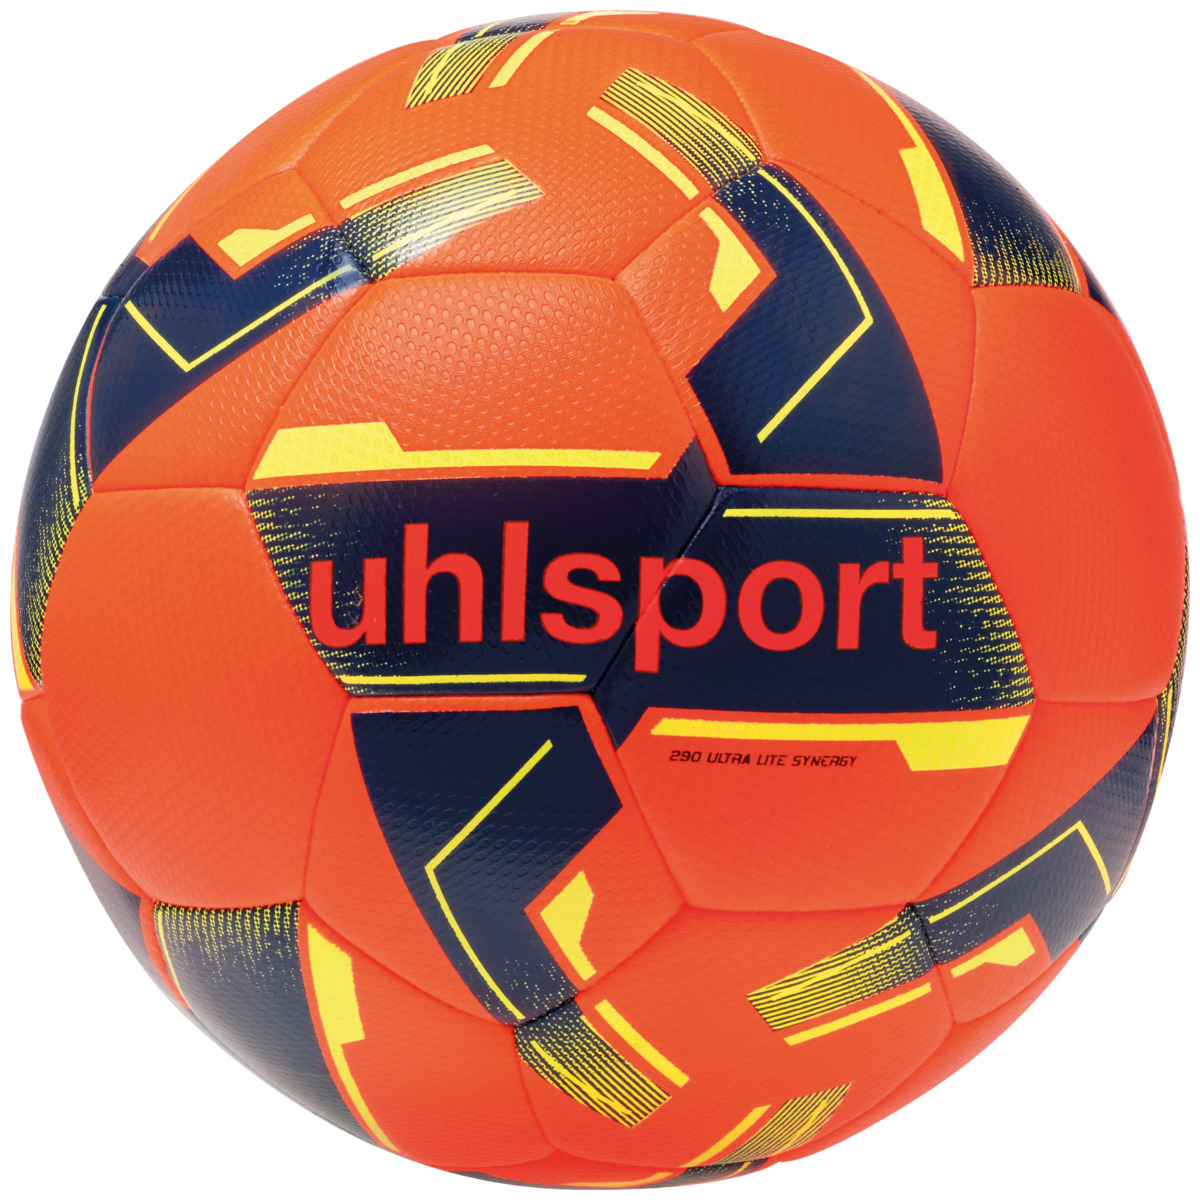 Uhlsport Synergy 290g Lightball orange Gr. 5